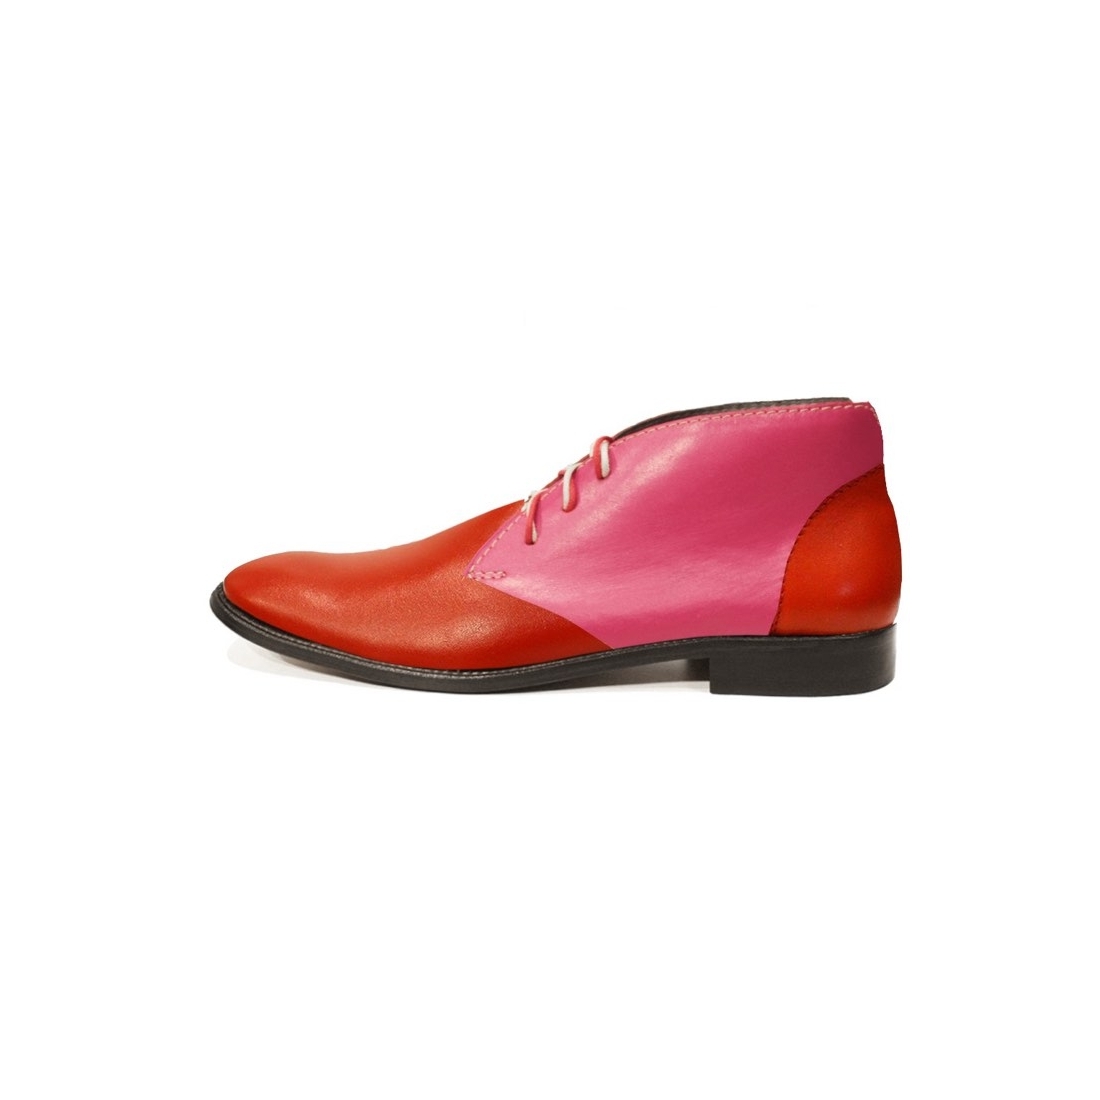 Modello Scaporro - チャッカブーツ - Handmade Colorful Italian Leather Shoes